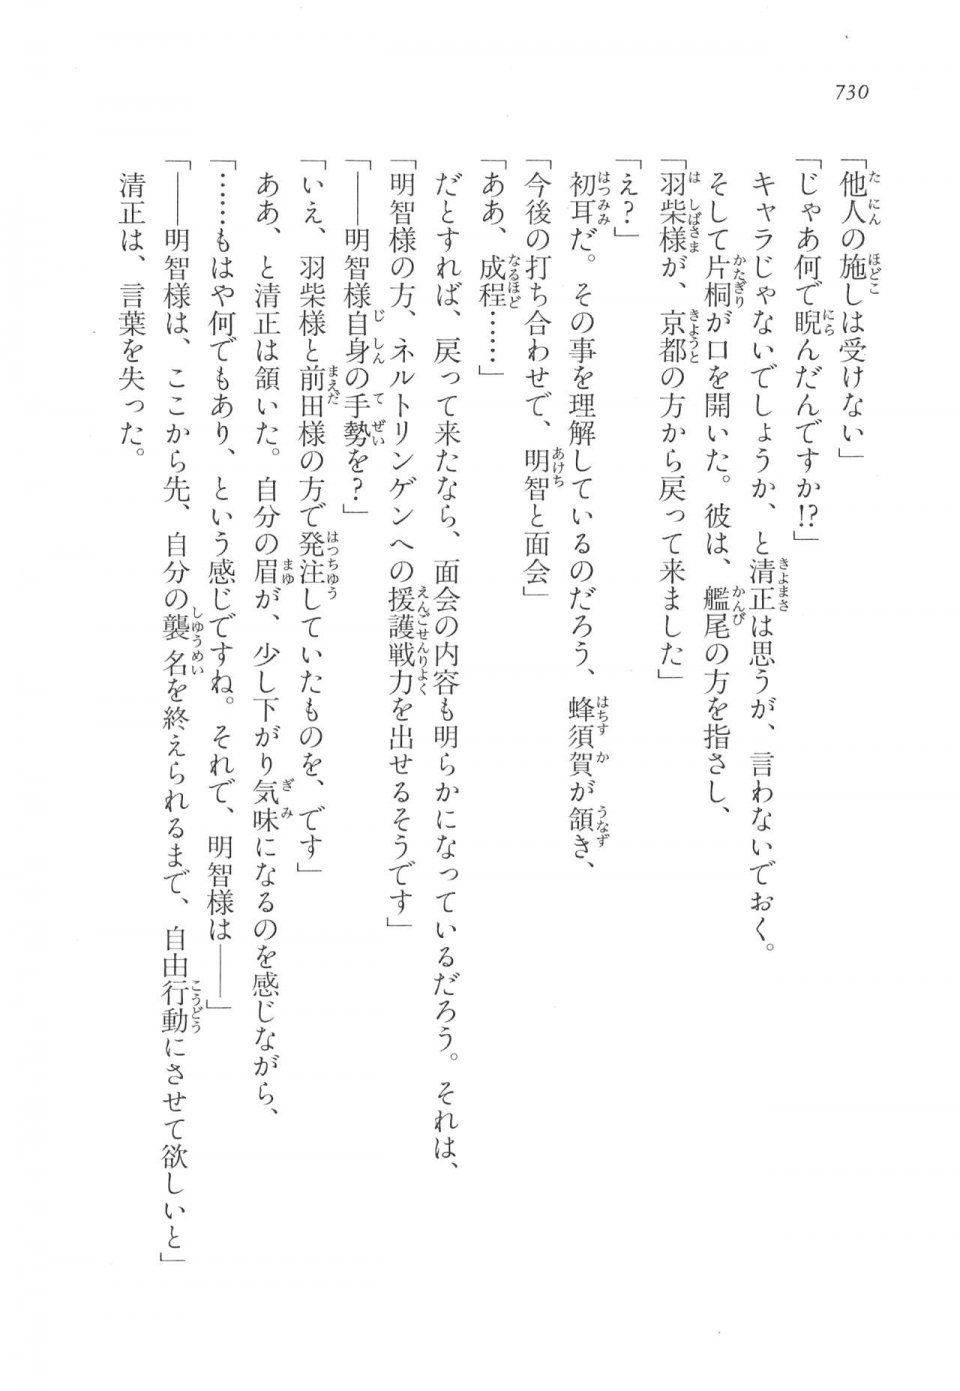 Kyoukai Senjou no Horizon LN Vol 17(7B) - Photo #732